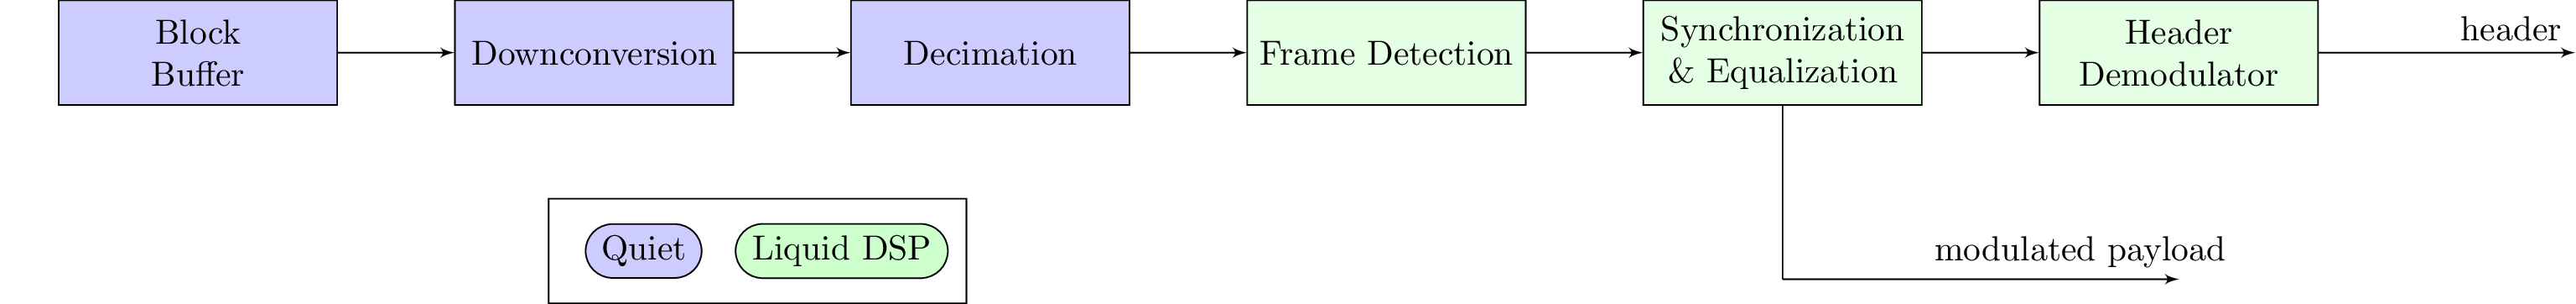 Decoding Block Diagram